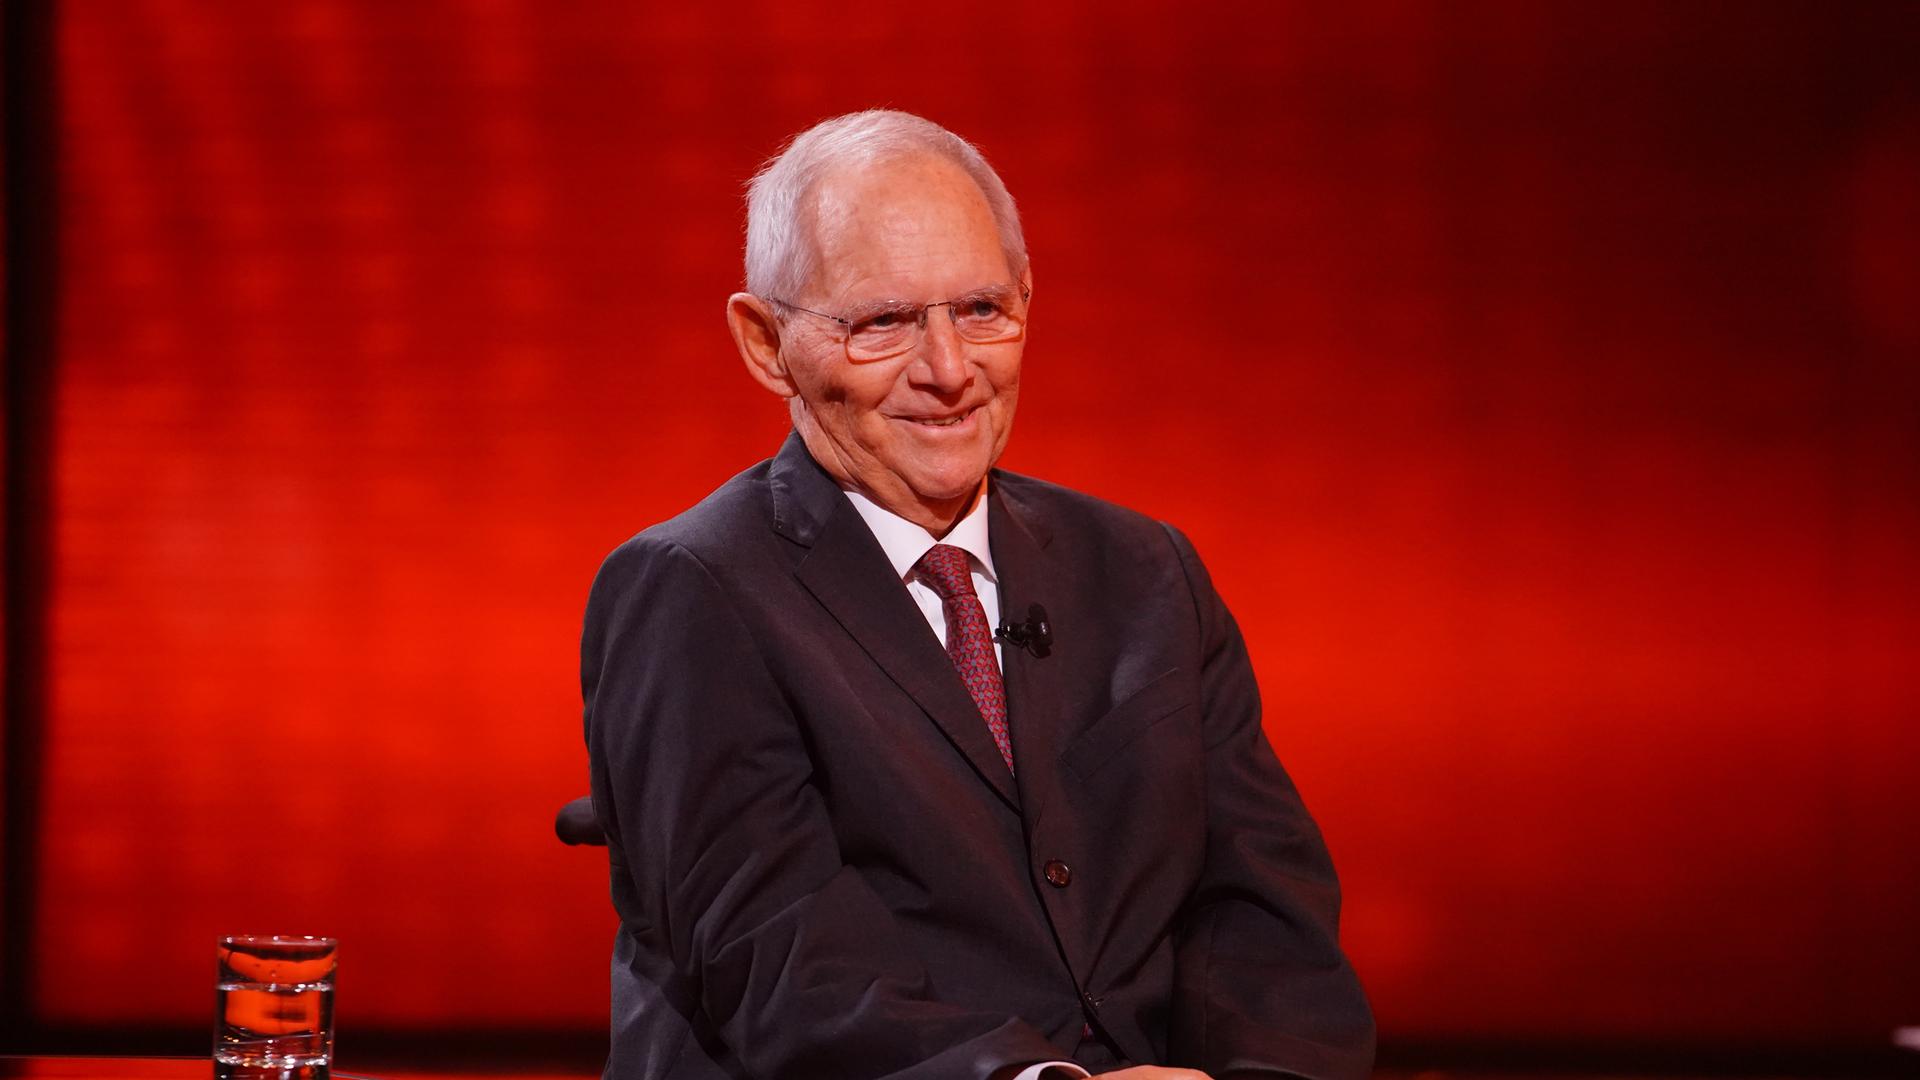 Das Foto von Ende 2021 zeigt Wolfgang Schäuble im Rollstuhl vor einem roten Hintergrund.